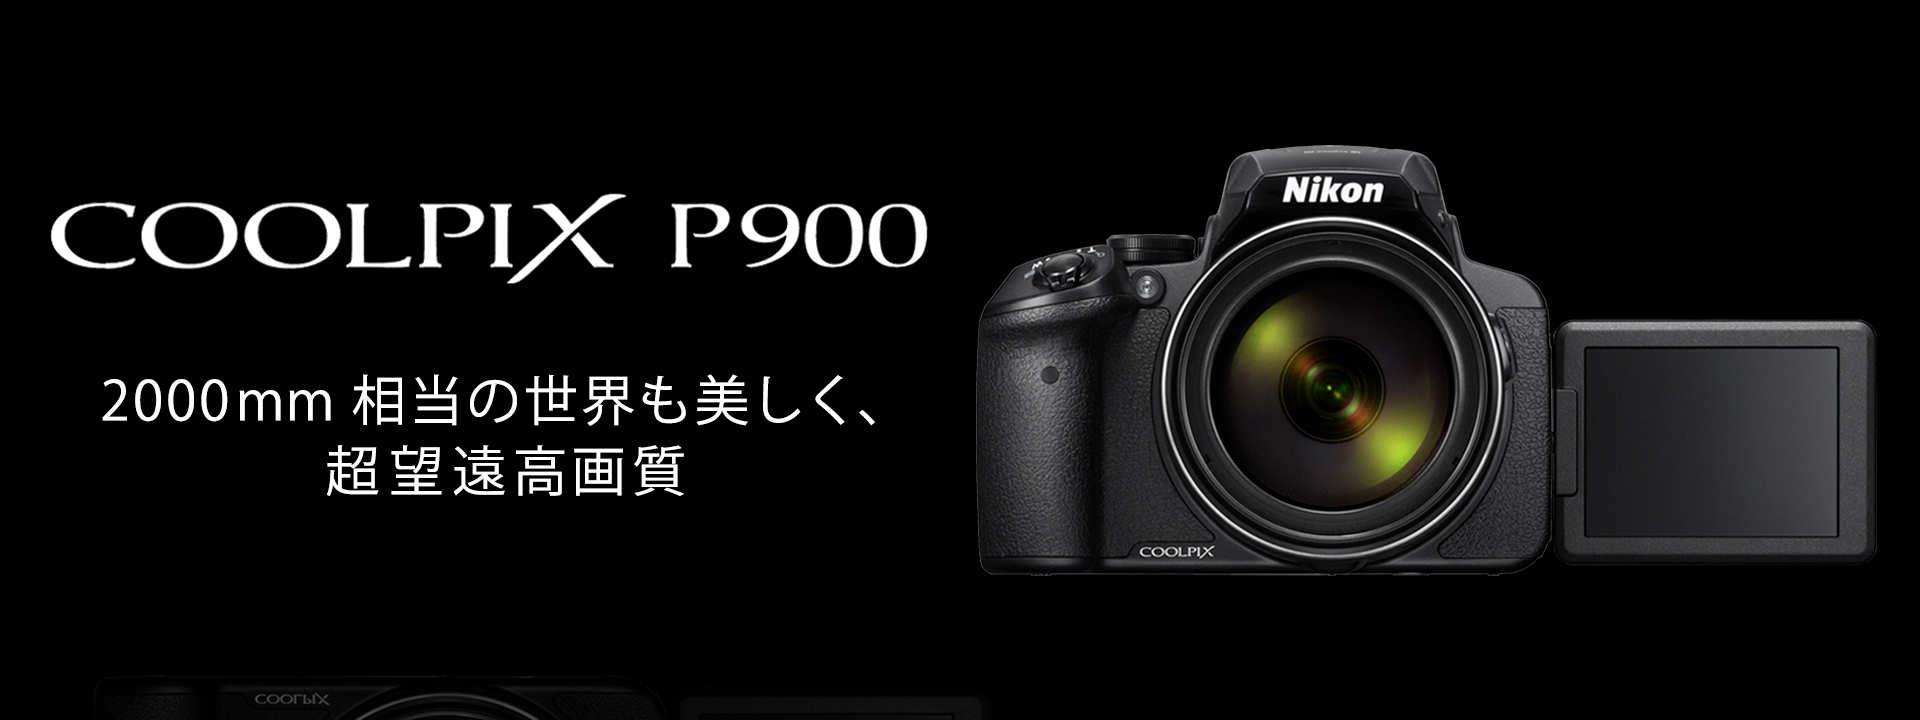 ニコン Nikon COOLPIX P900